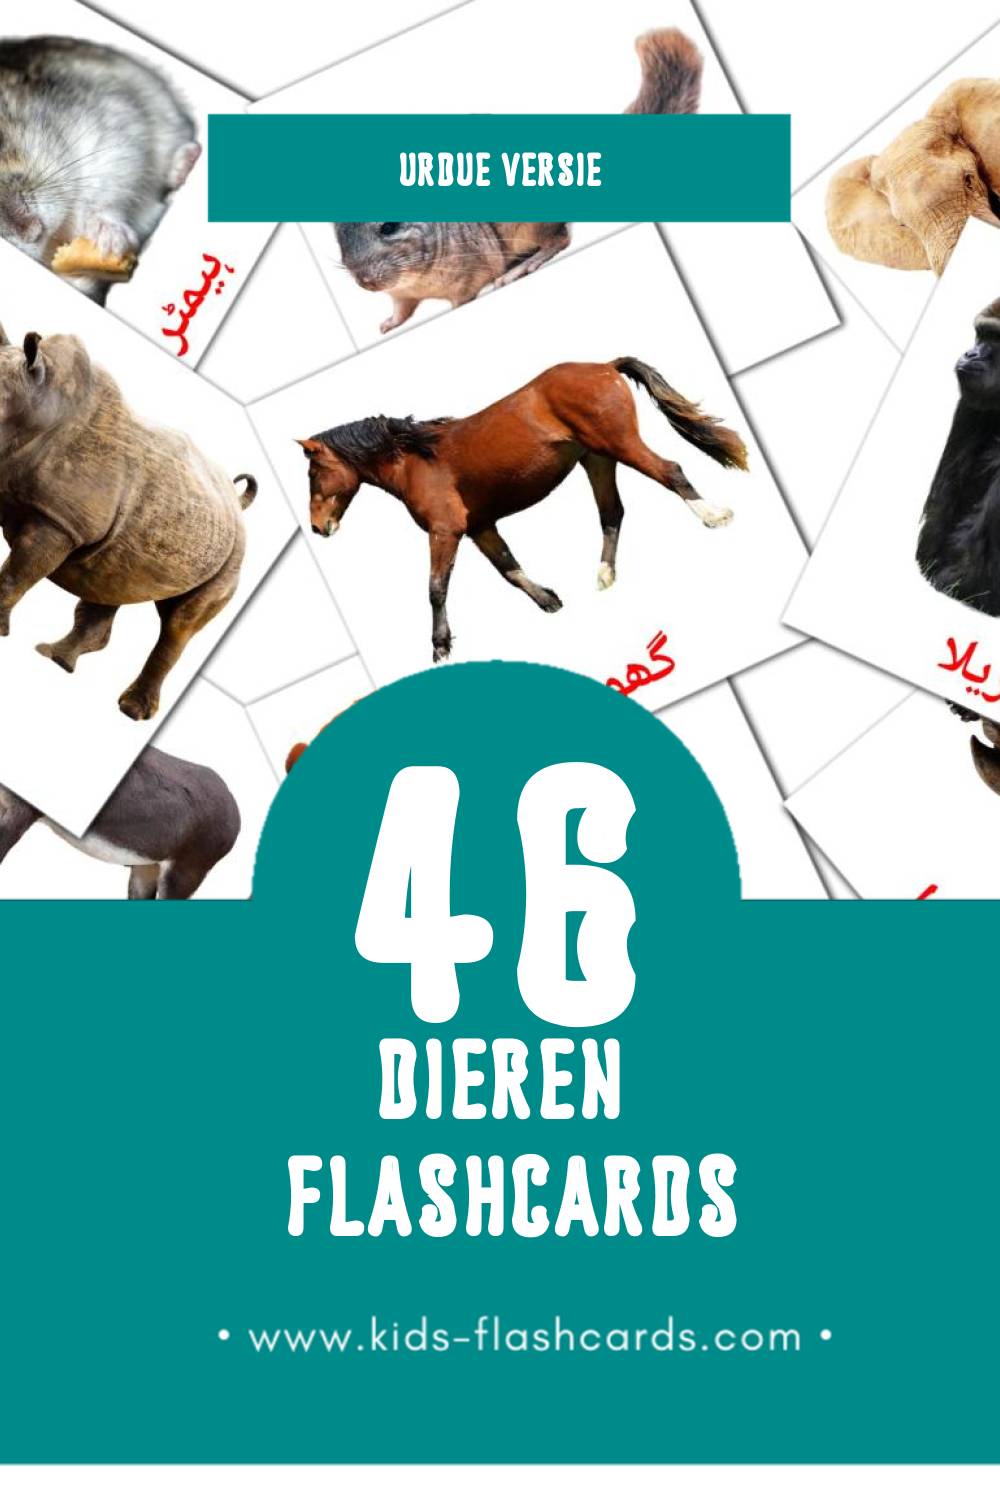 Visuele جانور Flashcards voor Kleuters (46 kaarten in het Urdu)